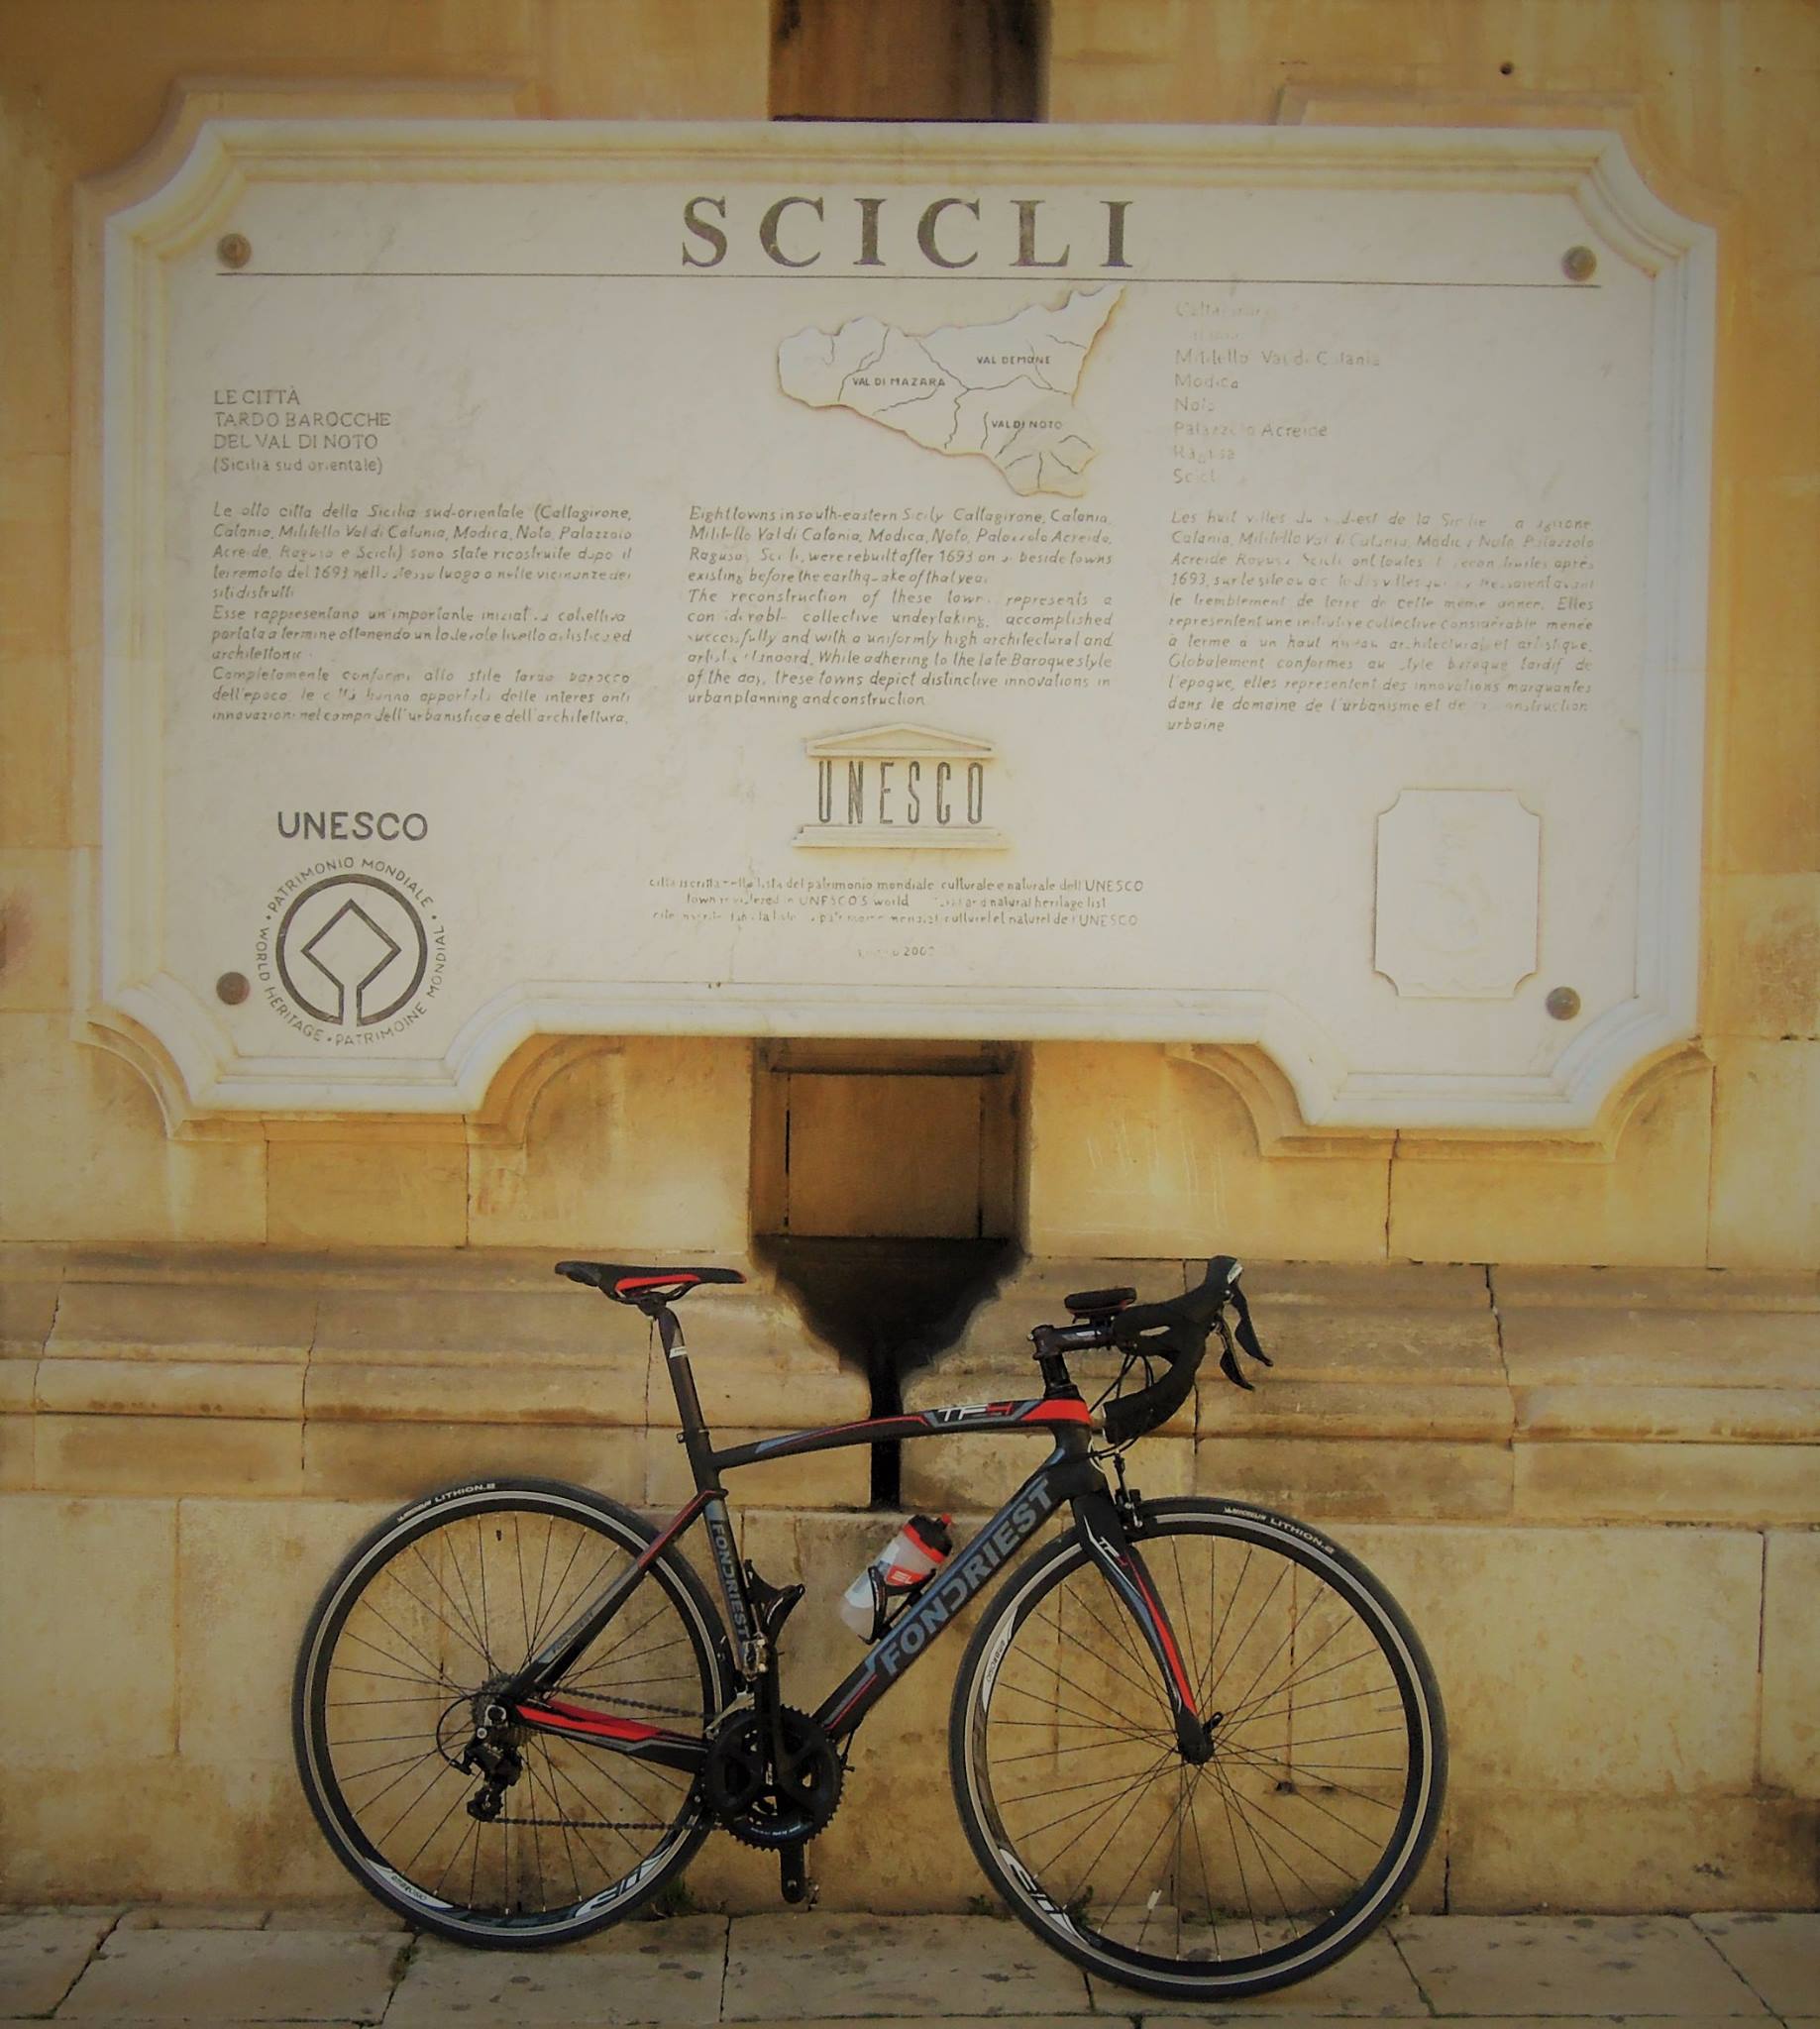 Biking in Sicily